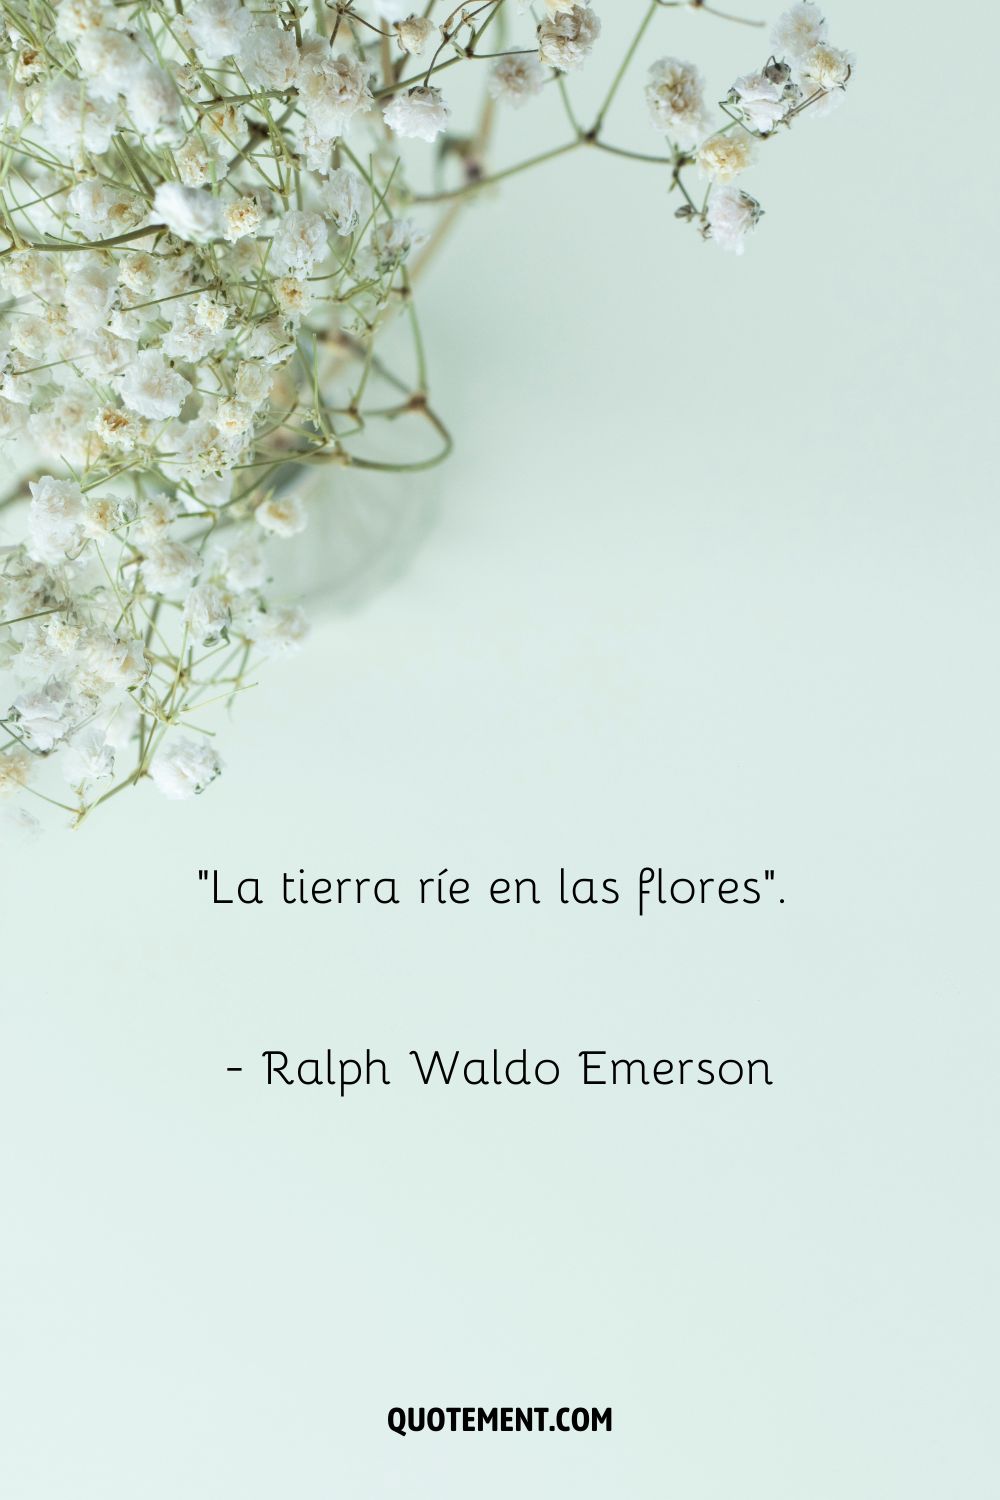 La tierra ríe en las flores. - Ralph Waldo Emerson